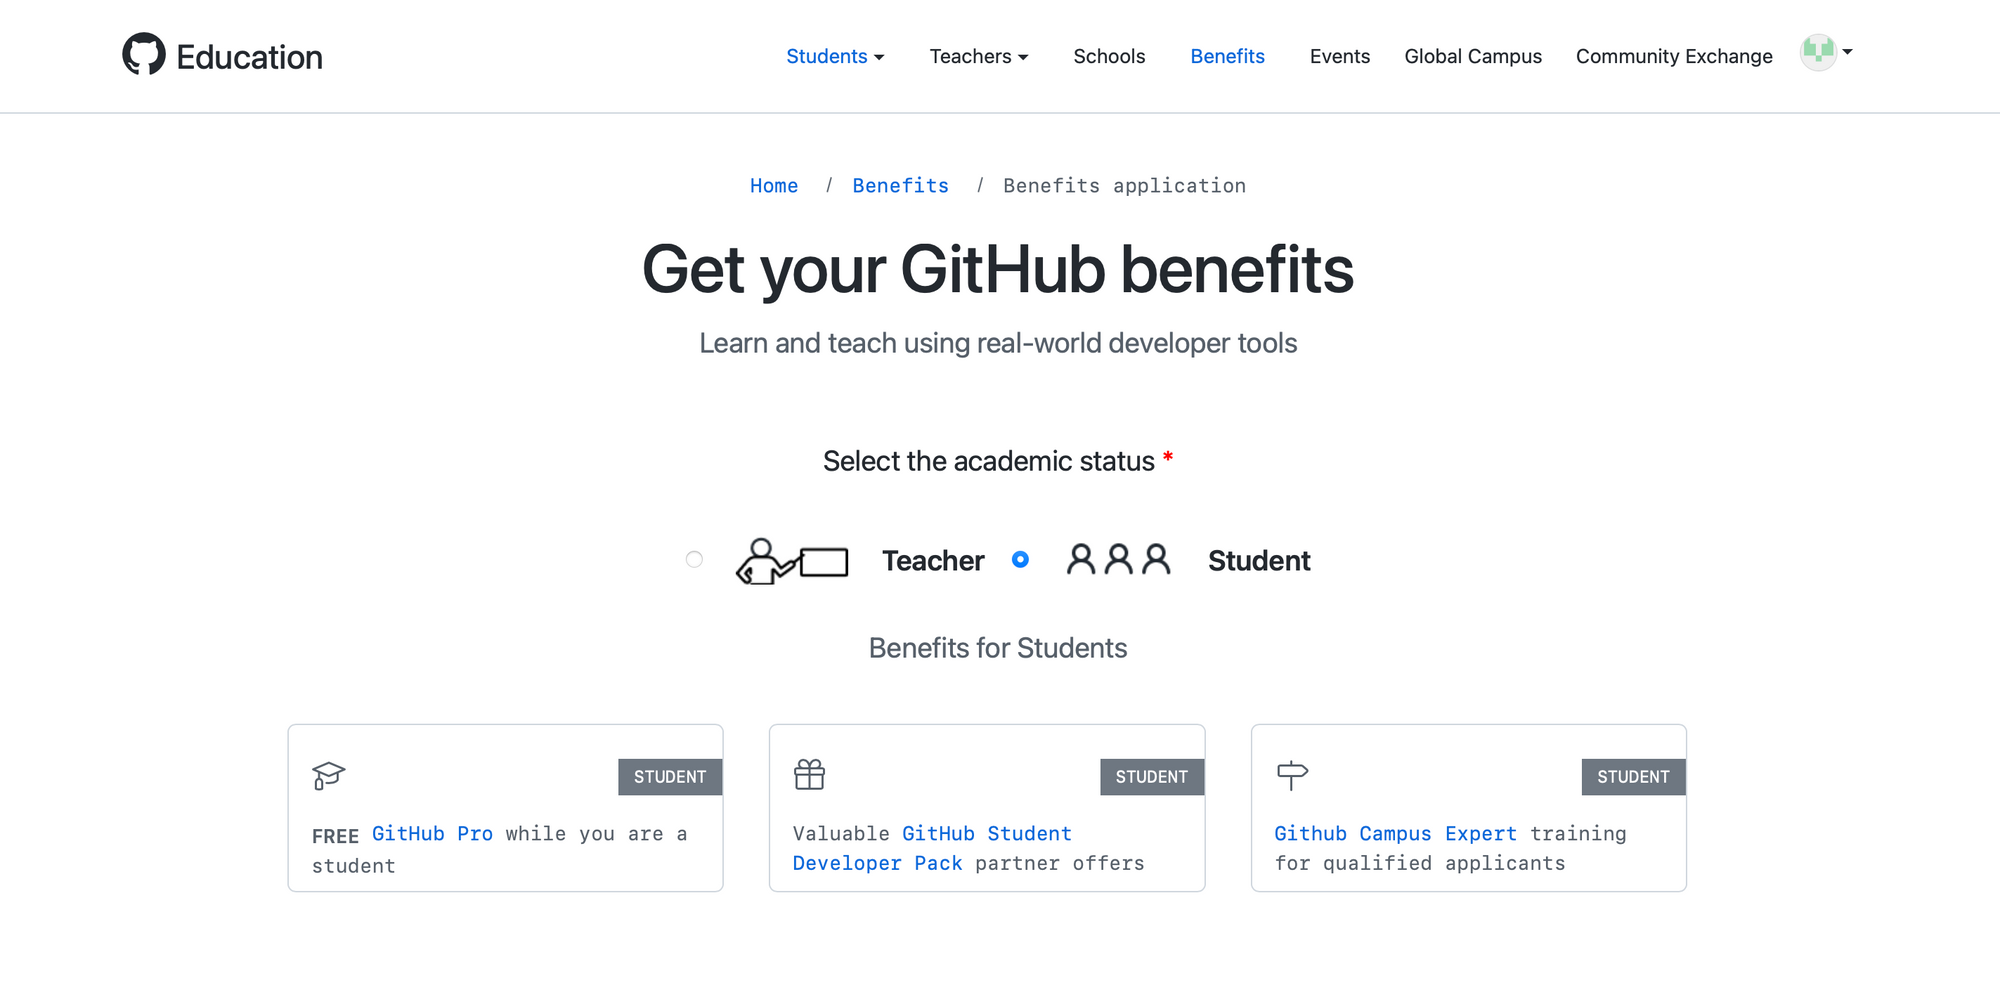 GitHub Student Developer Pack Website